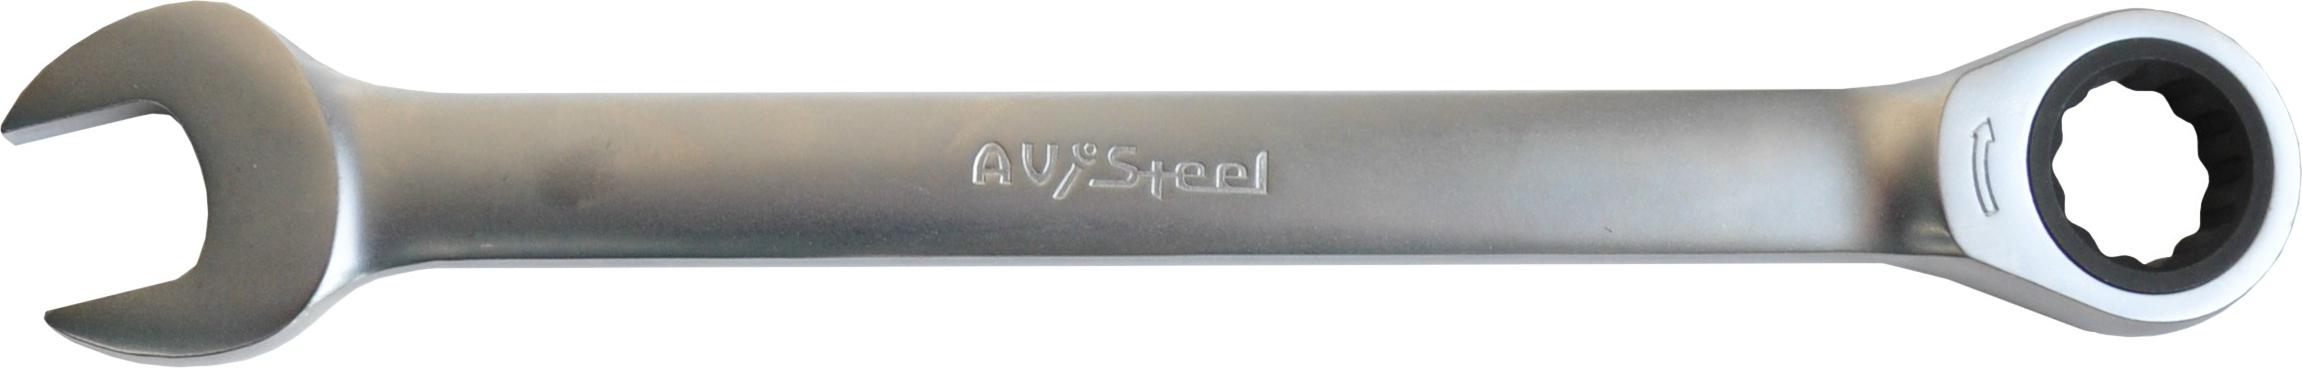 Ключ комбинированный Avsteel Av-315021